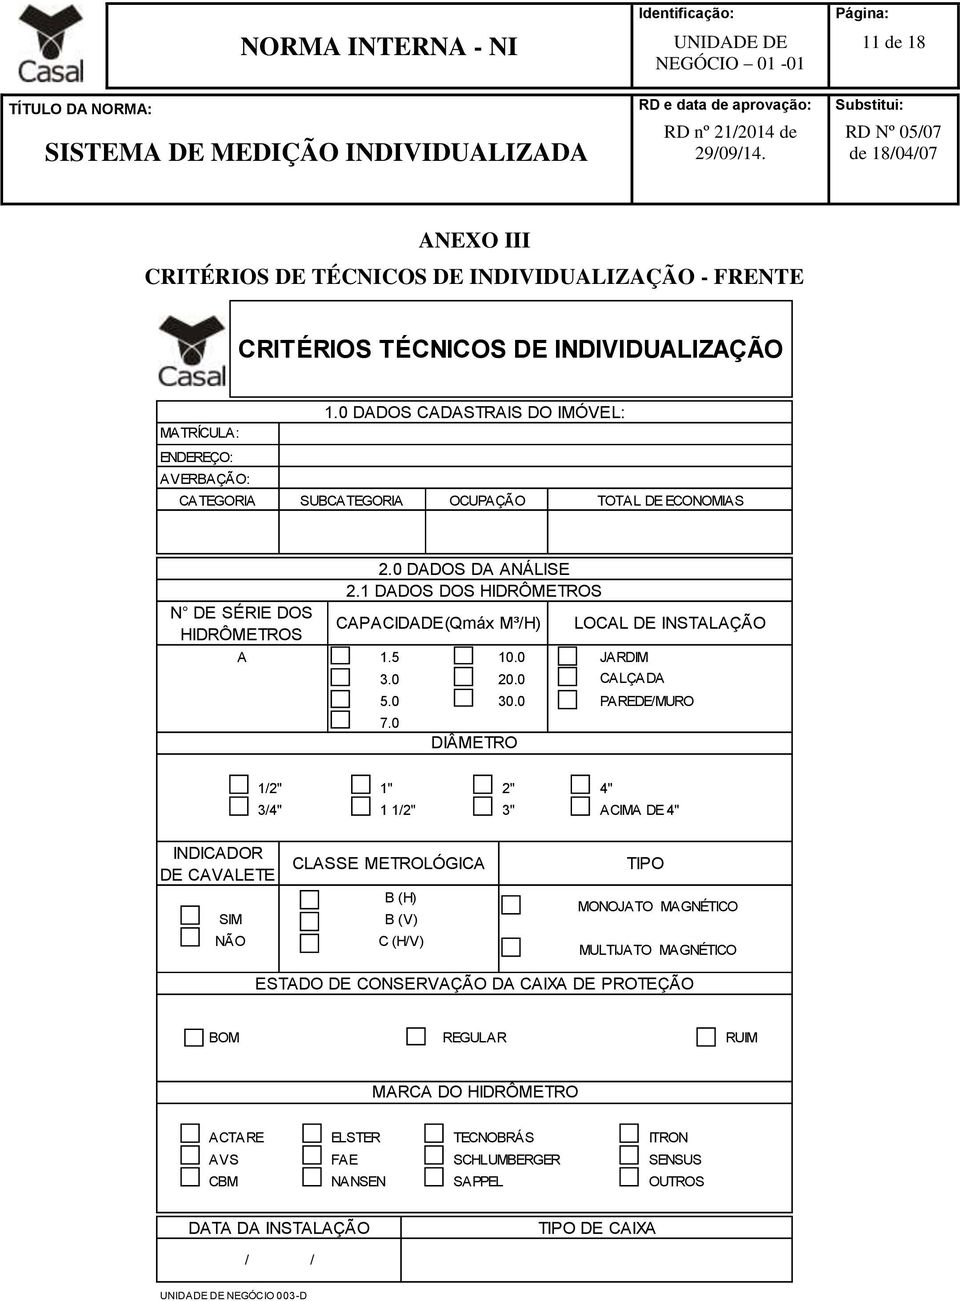 0 30.0 DIÂMETRO LOCAL DE INSTALAÇÃO JARDIM CALÇADA PAREDE/MURO 1/2" 1" 2" 4" 3/4" 1 1/2" 3" ACIMA DE 4" INDICADOR DE CAVALETE SIM NÃO CLASSE METROLÓGICA B (H) B (V) C (H/V) TIPO MONOJATO